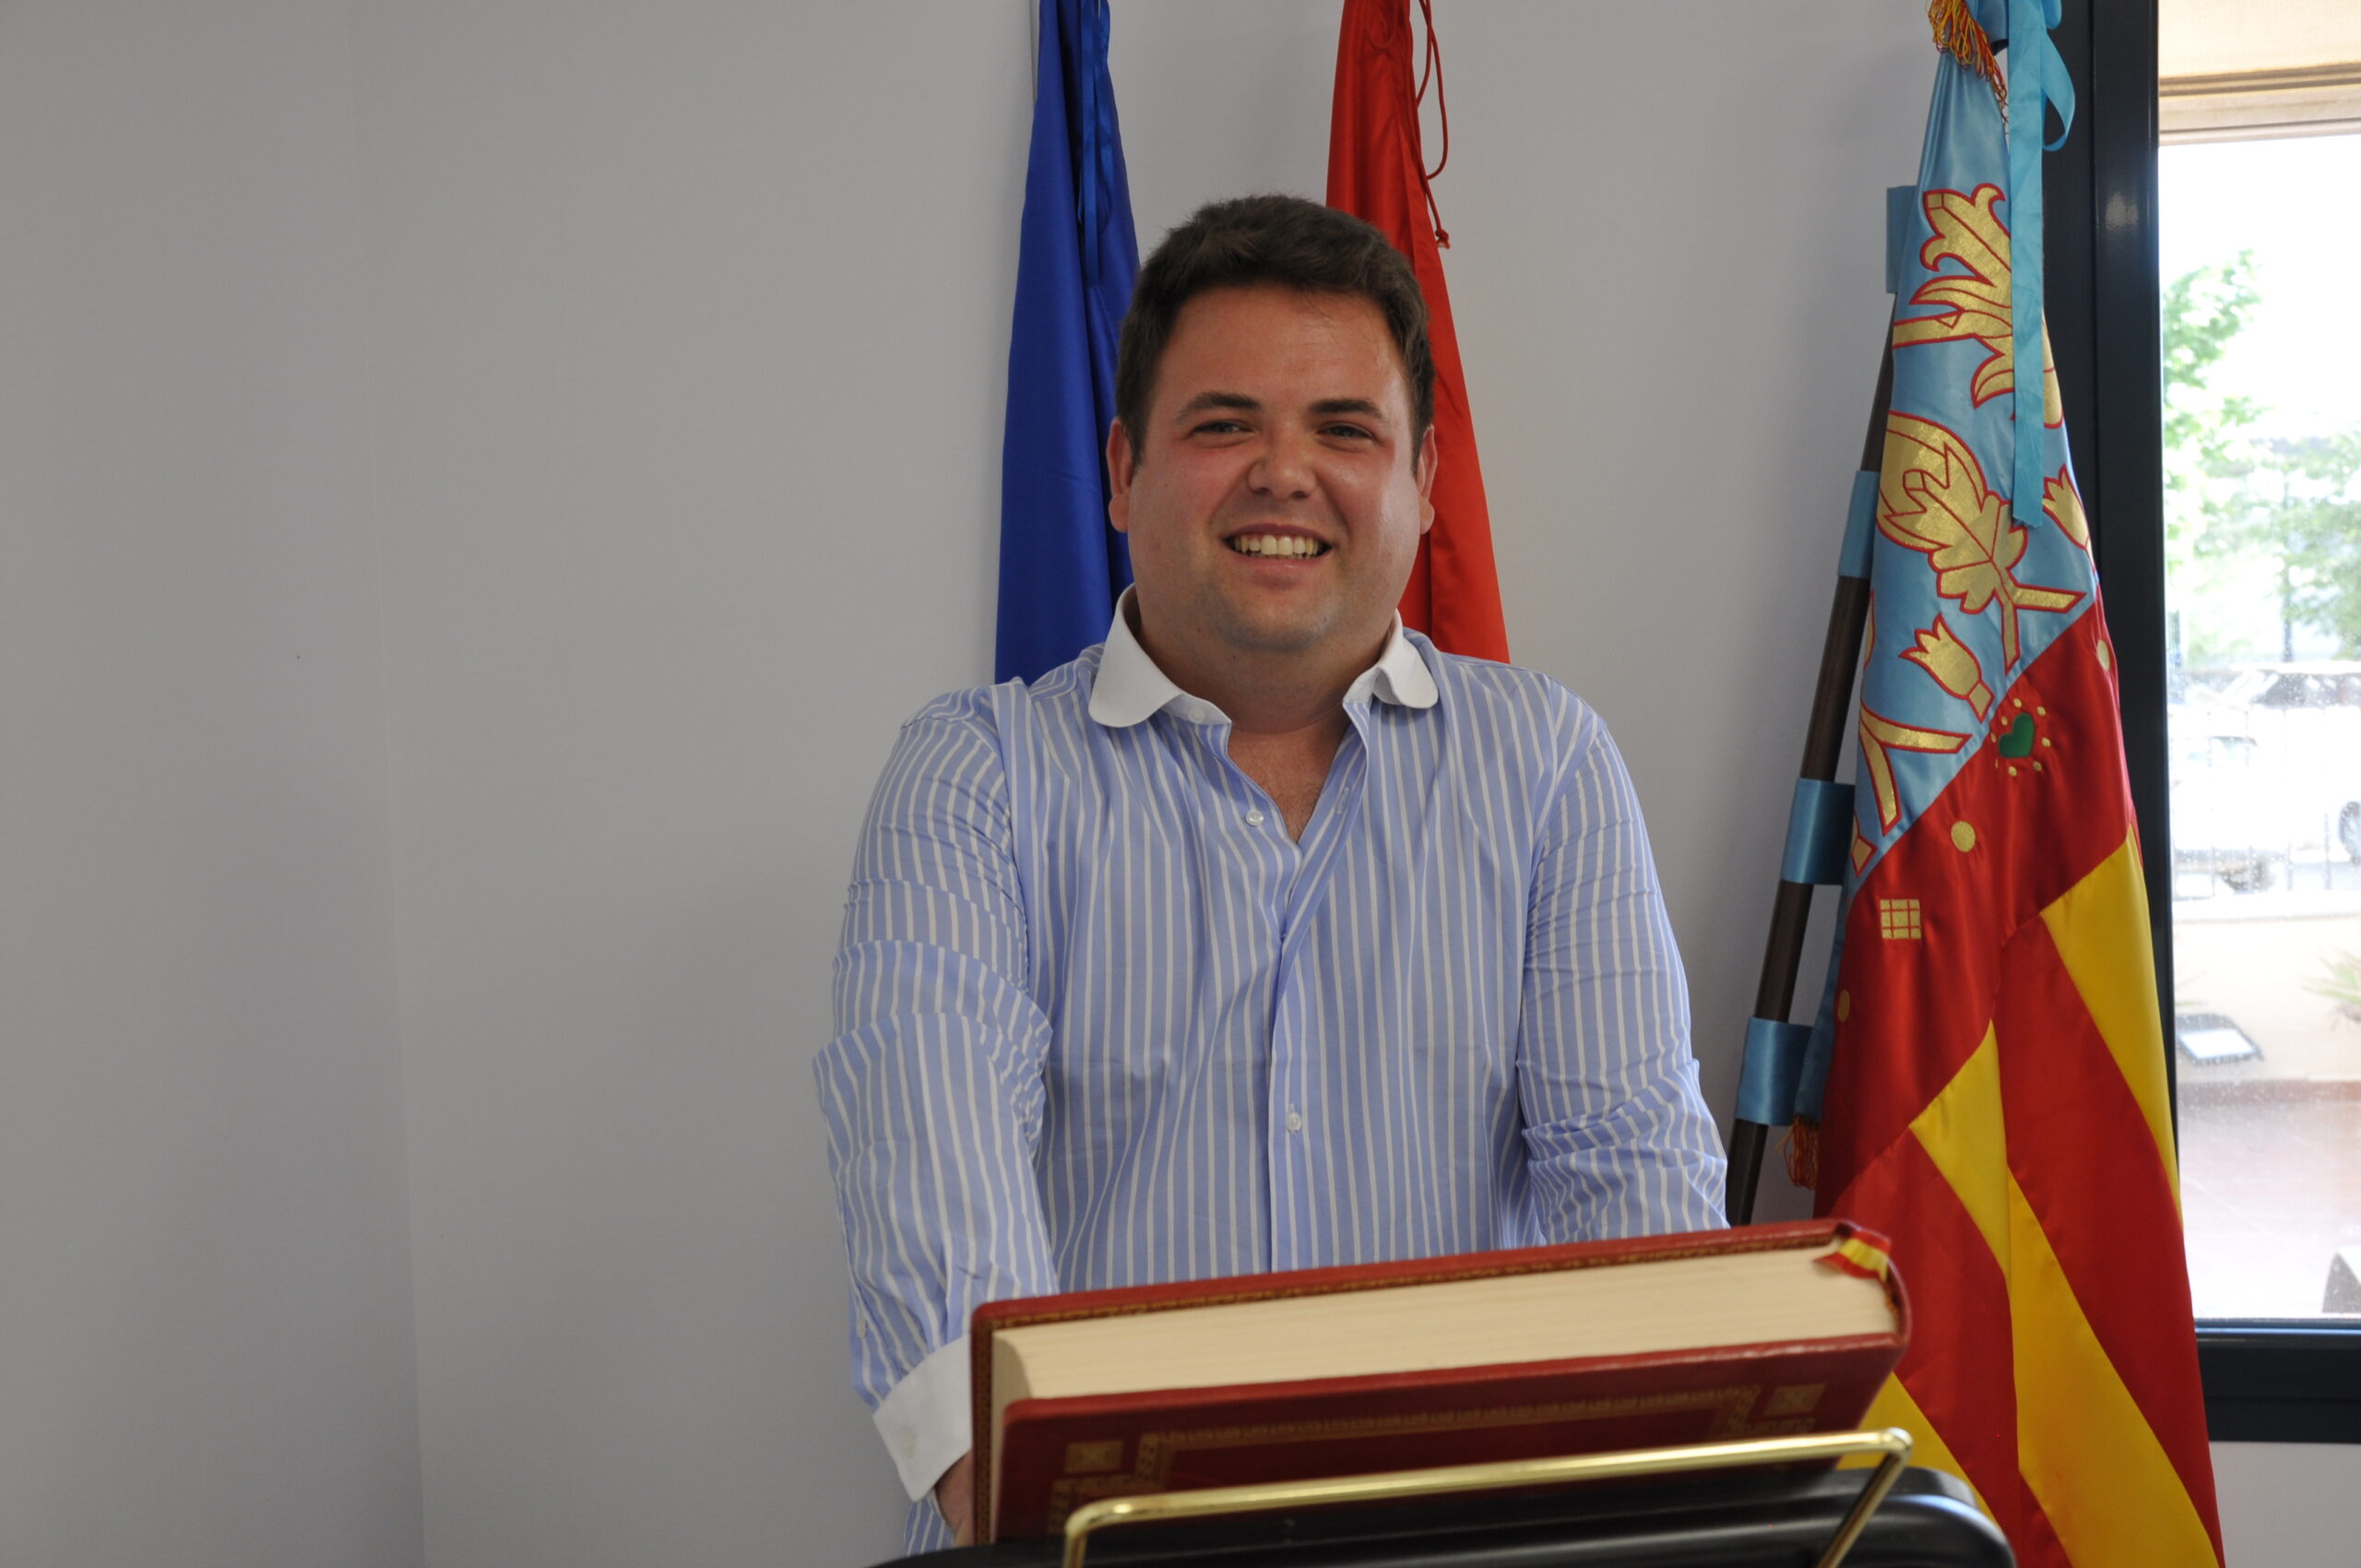 Fotografía de Jorge García Viana, Primer Teniente de Alcalde de Villargordo del Cabriel.